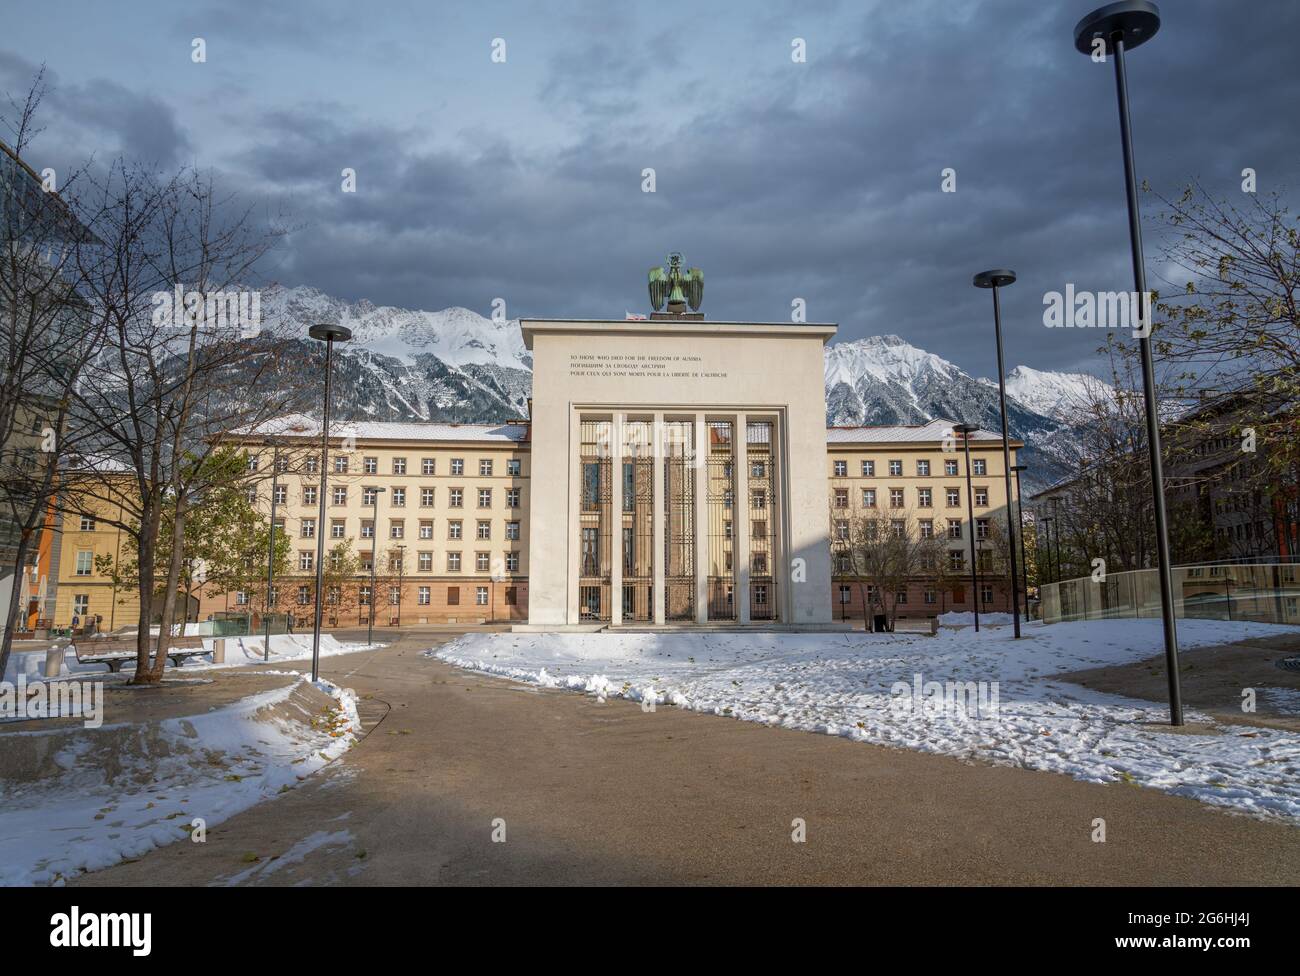 Parlamentsgebäude und Befreiungsdenkmal - Innsbruck, Tirol, Österreich Stockfoto